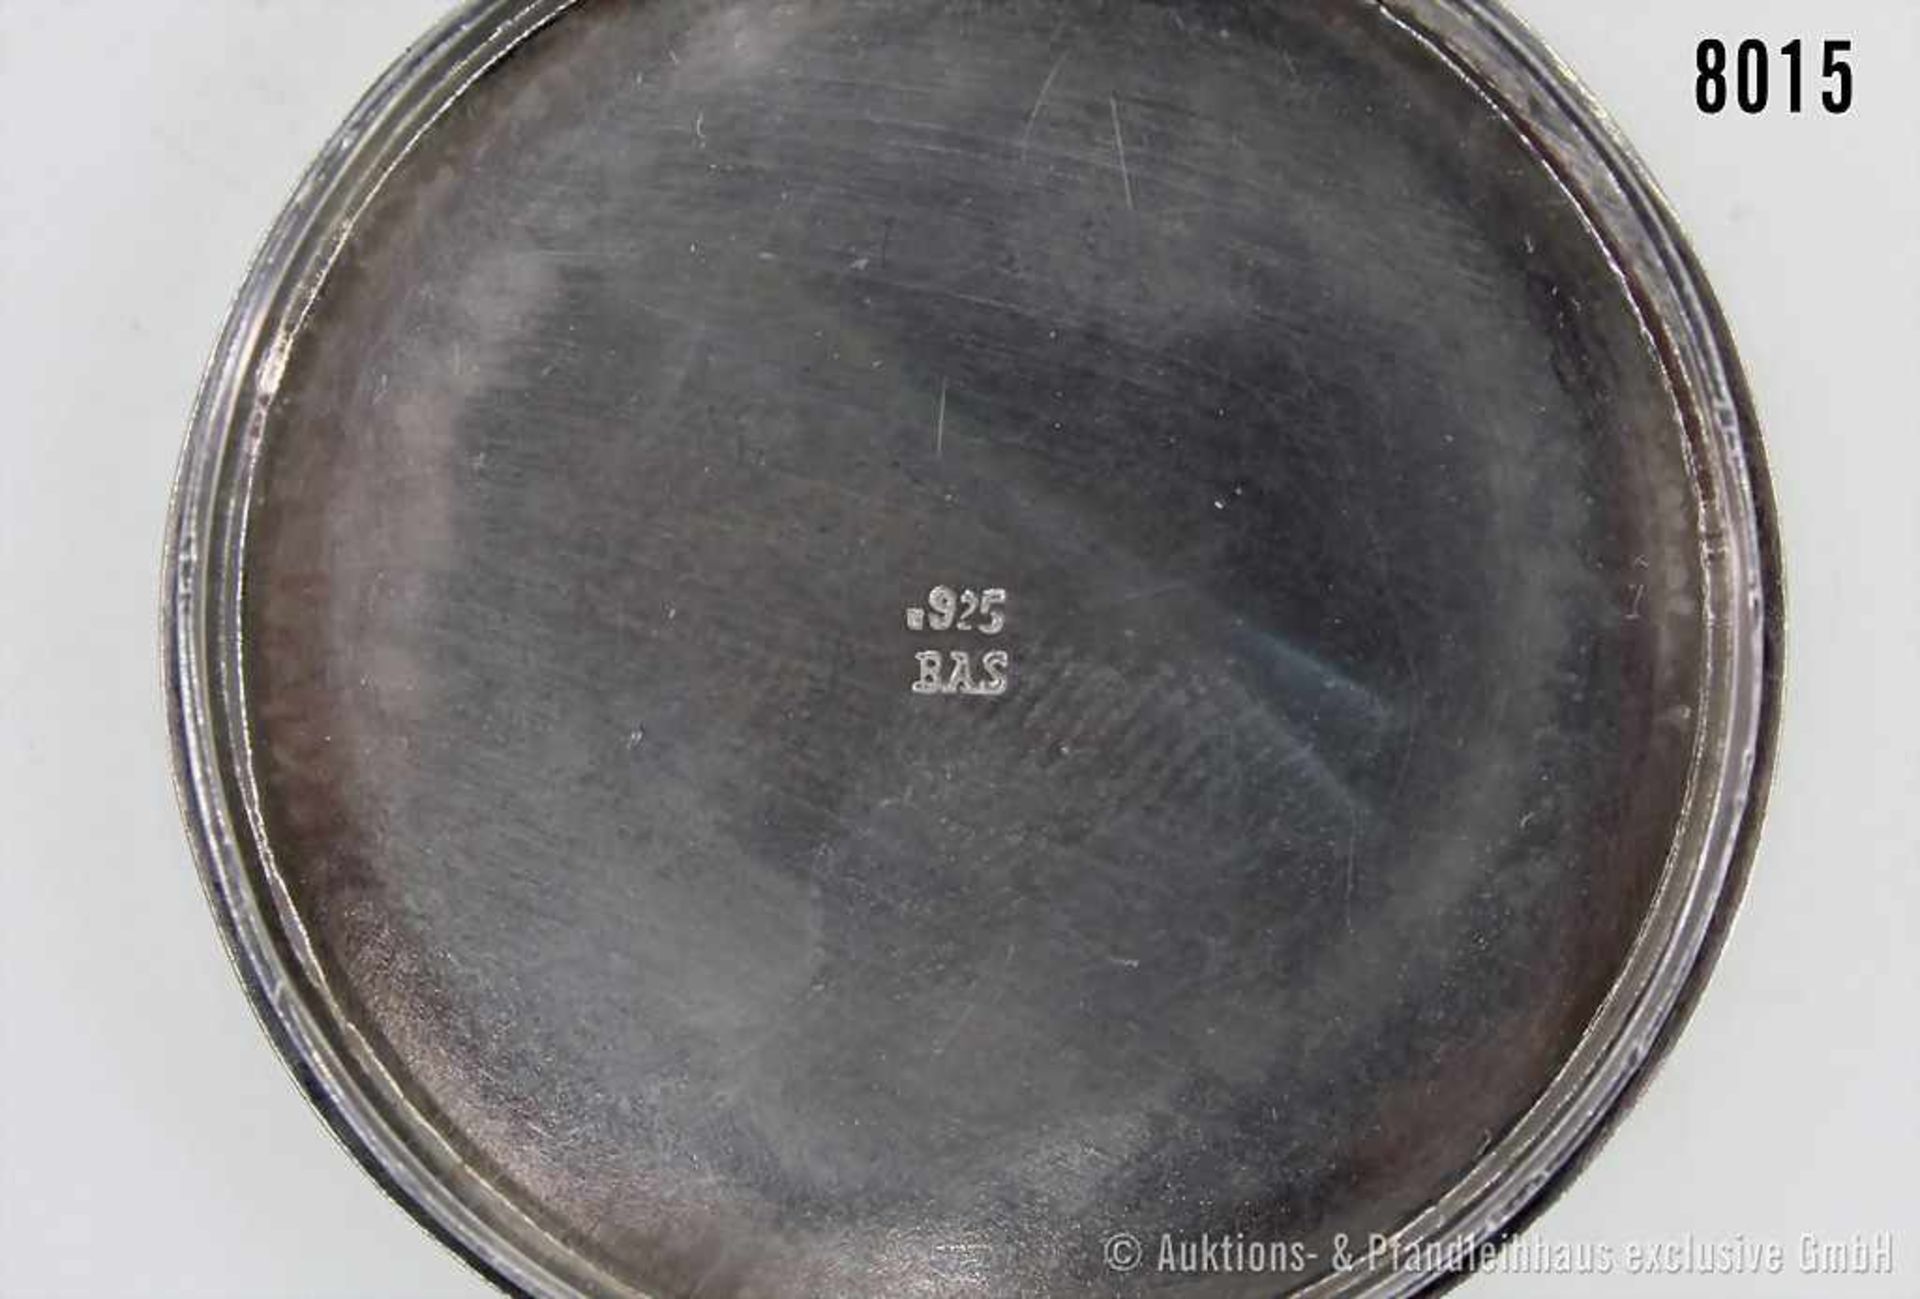 Runde Pillendose, mit Porträt eines Grafen, 925er Silber (mit Punze BAS). 32 g, sehr guter Zustand.- - Bild 2 aus 2